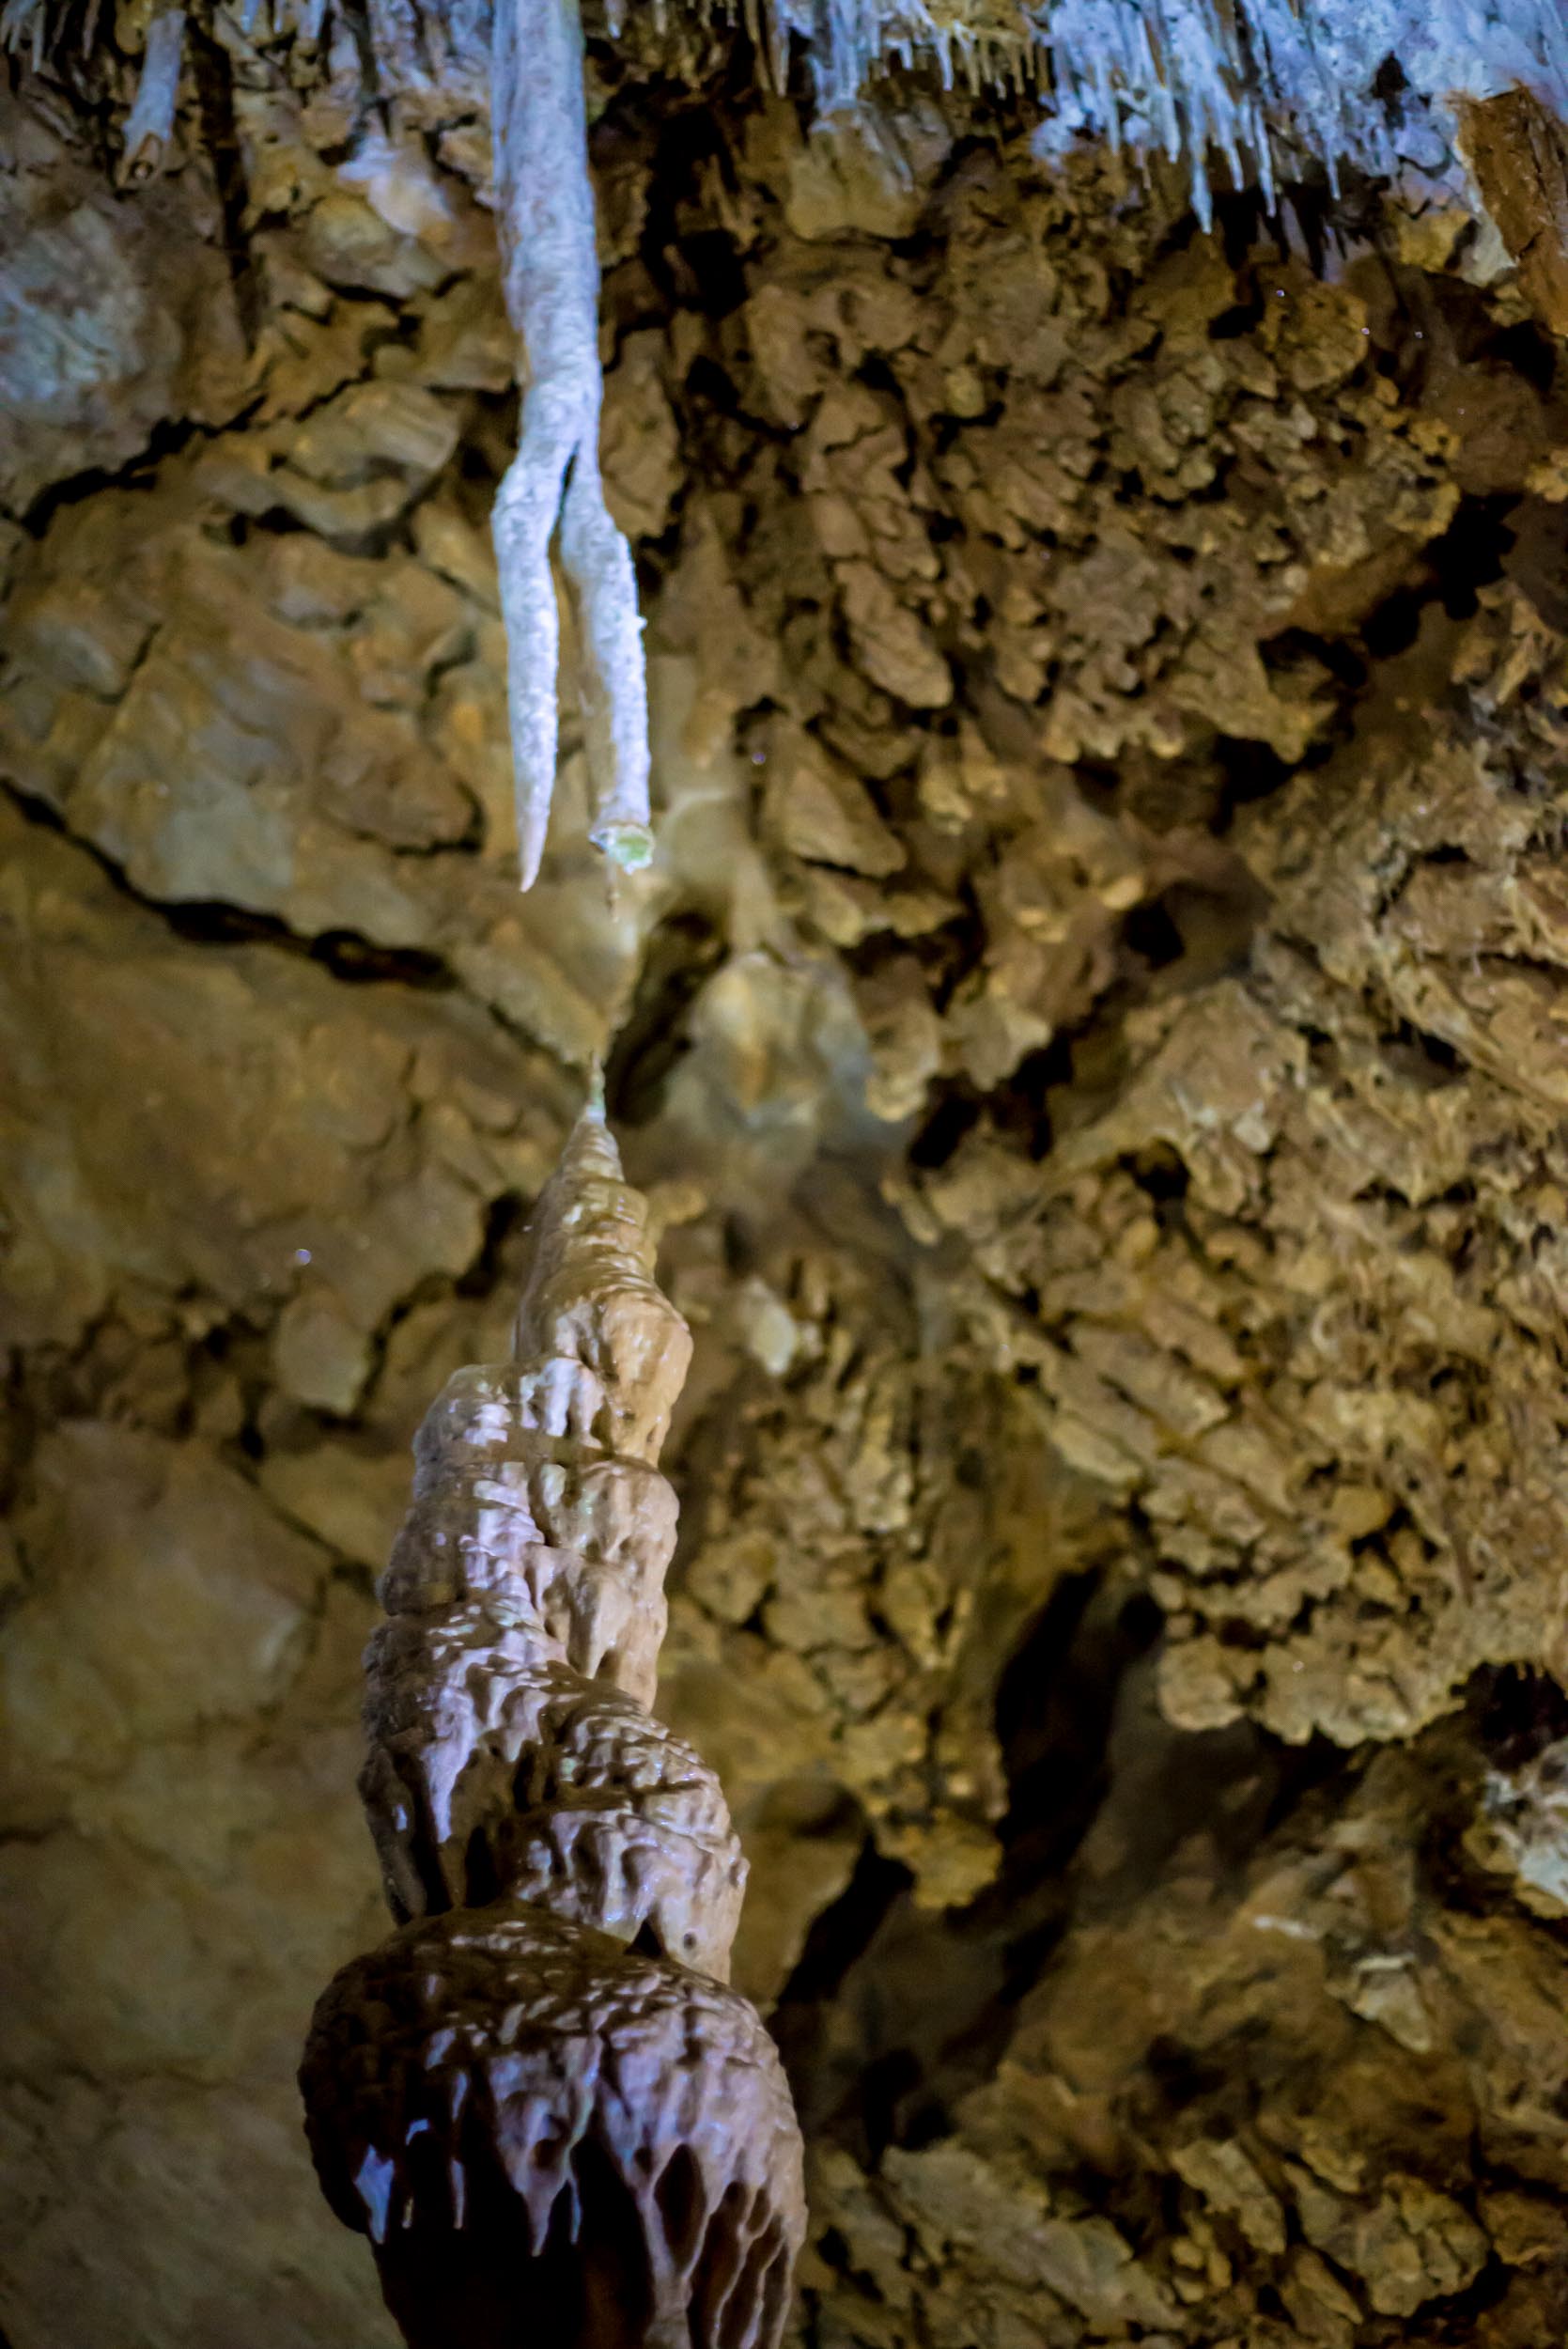 Мраморная пещера